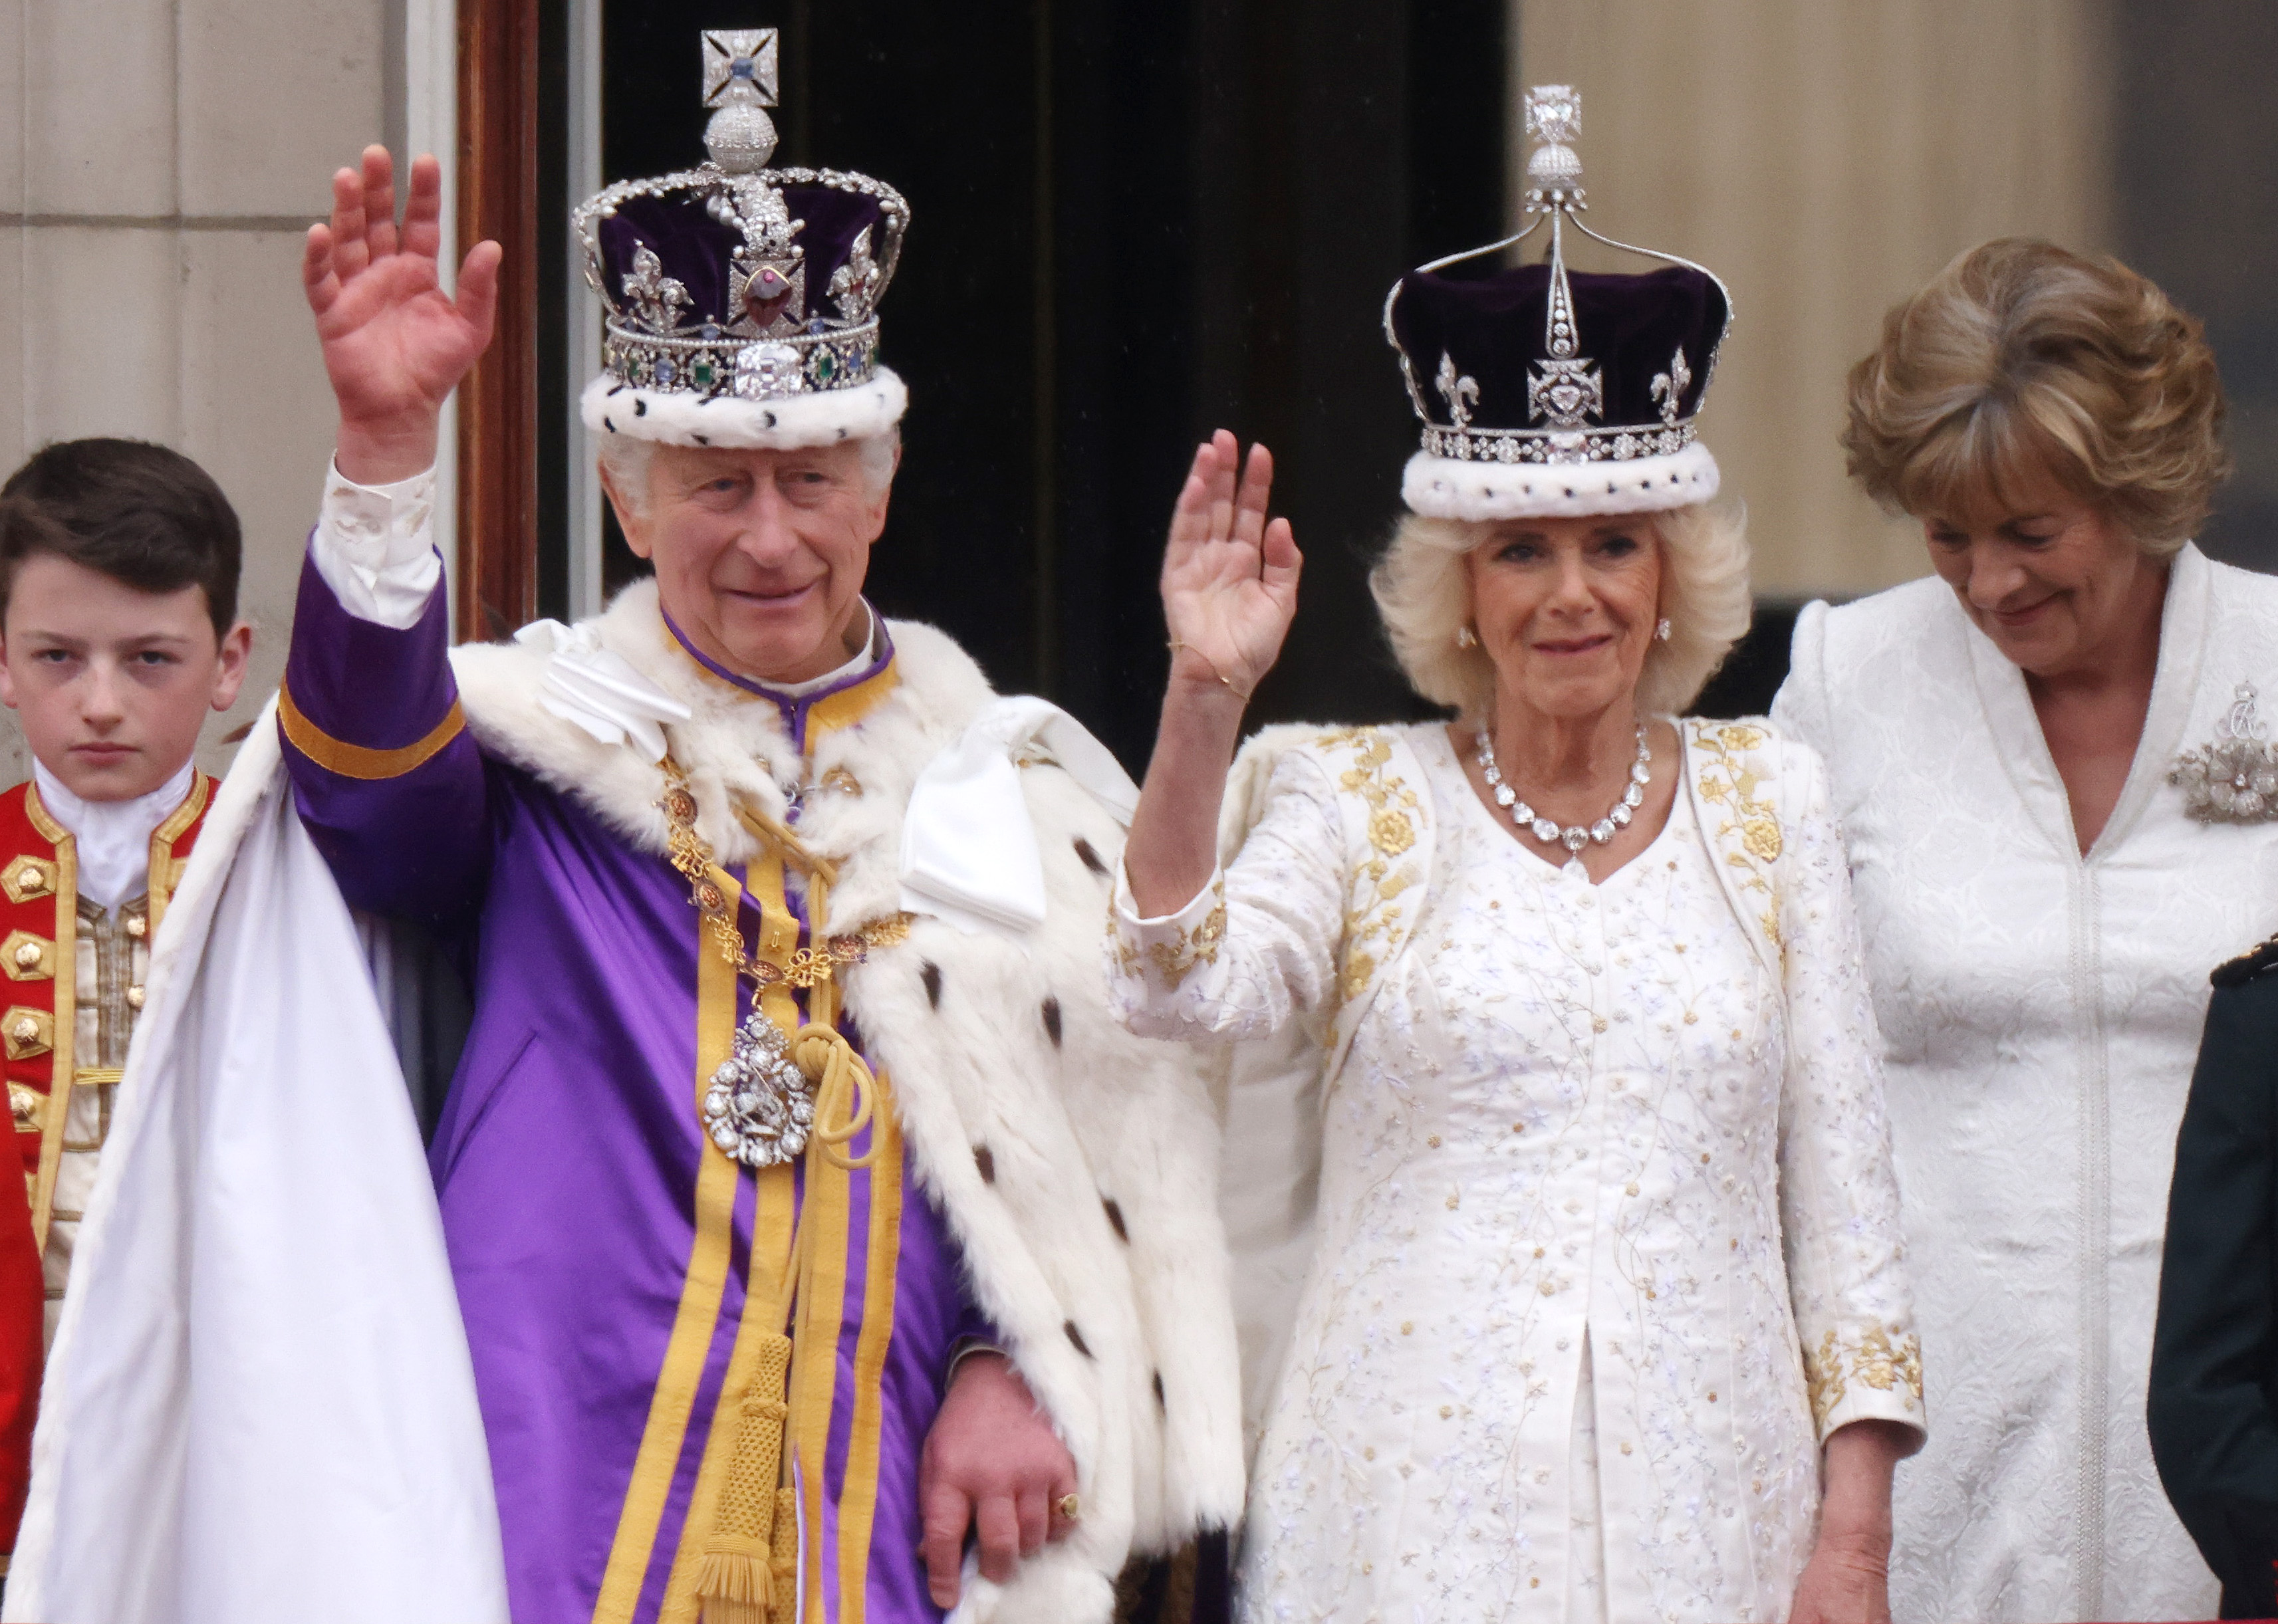 Le roi Charles III et la reine Camilla au balcon du palais de Buckingham lors de leur couronnement le 06 mai 2023 | Source : Getty Images